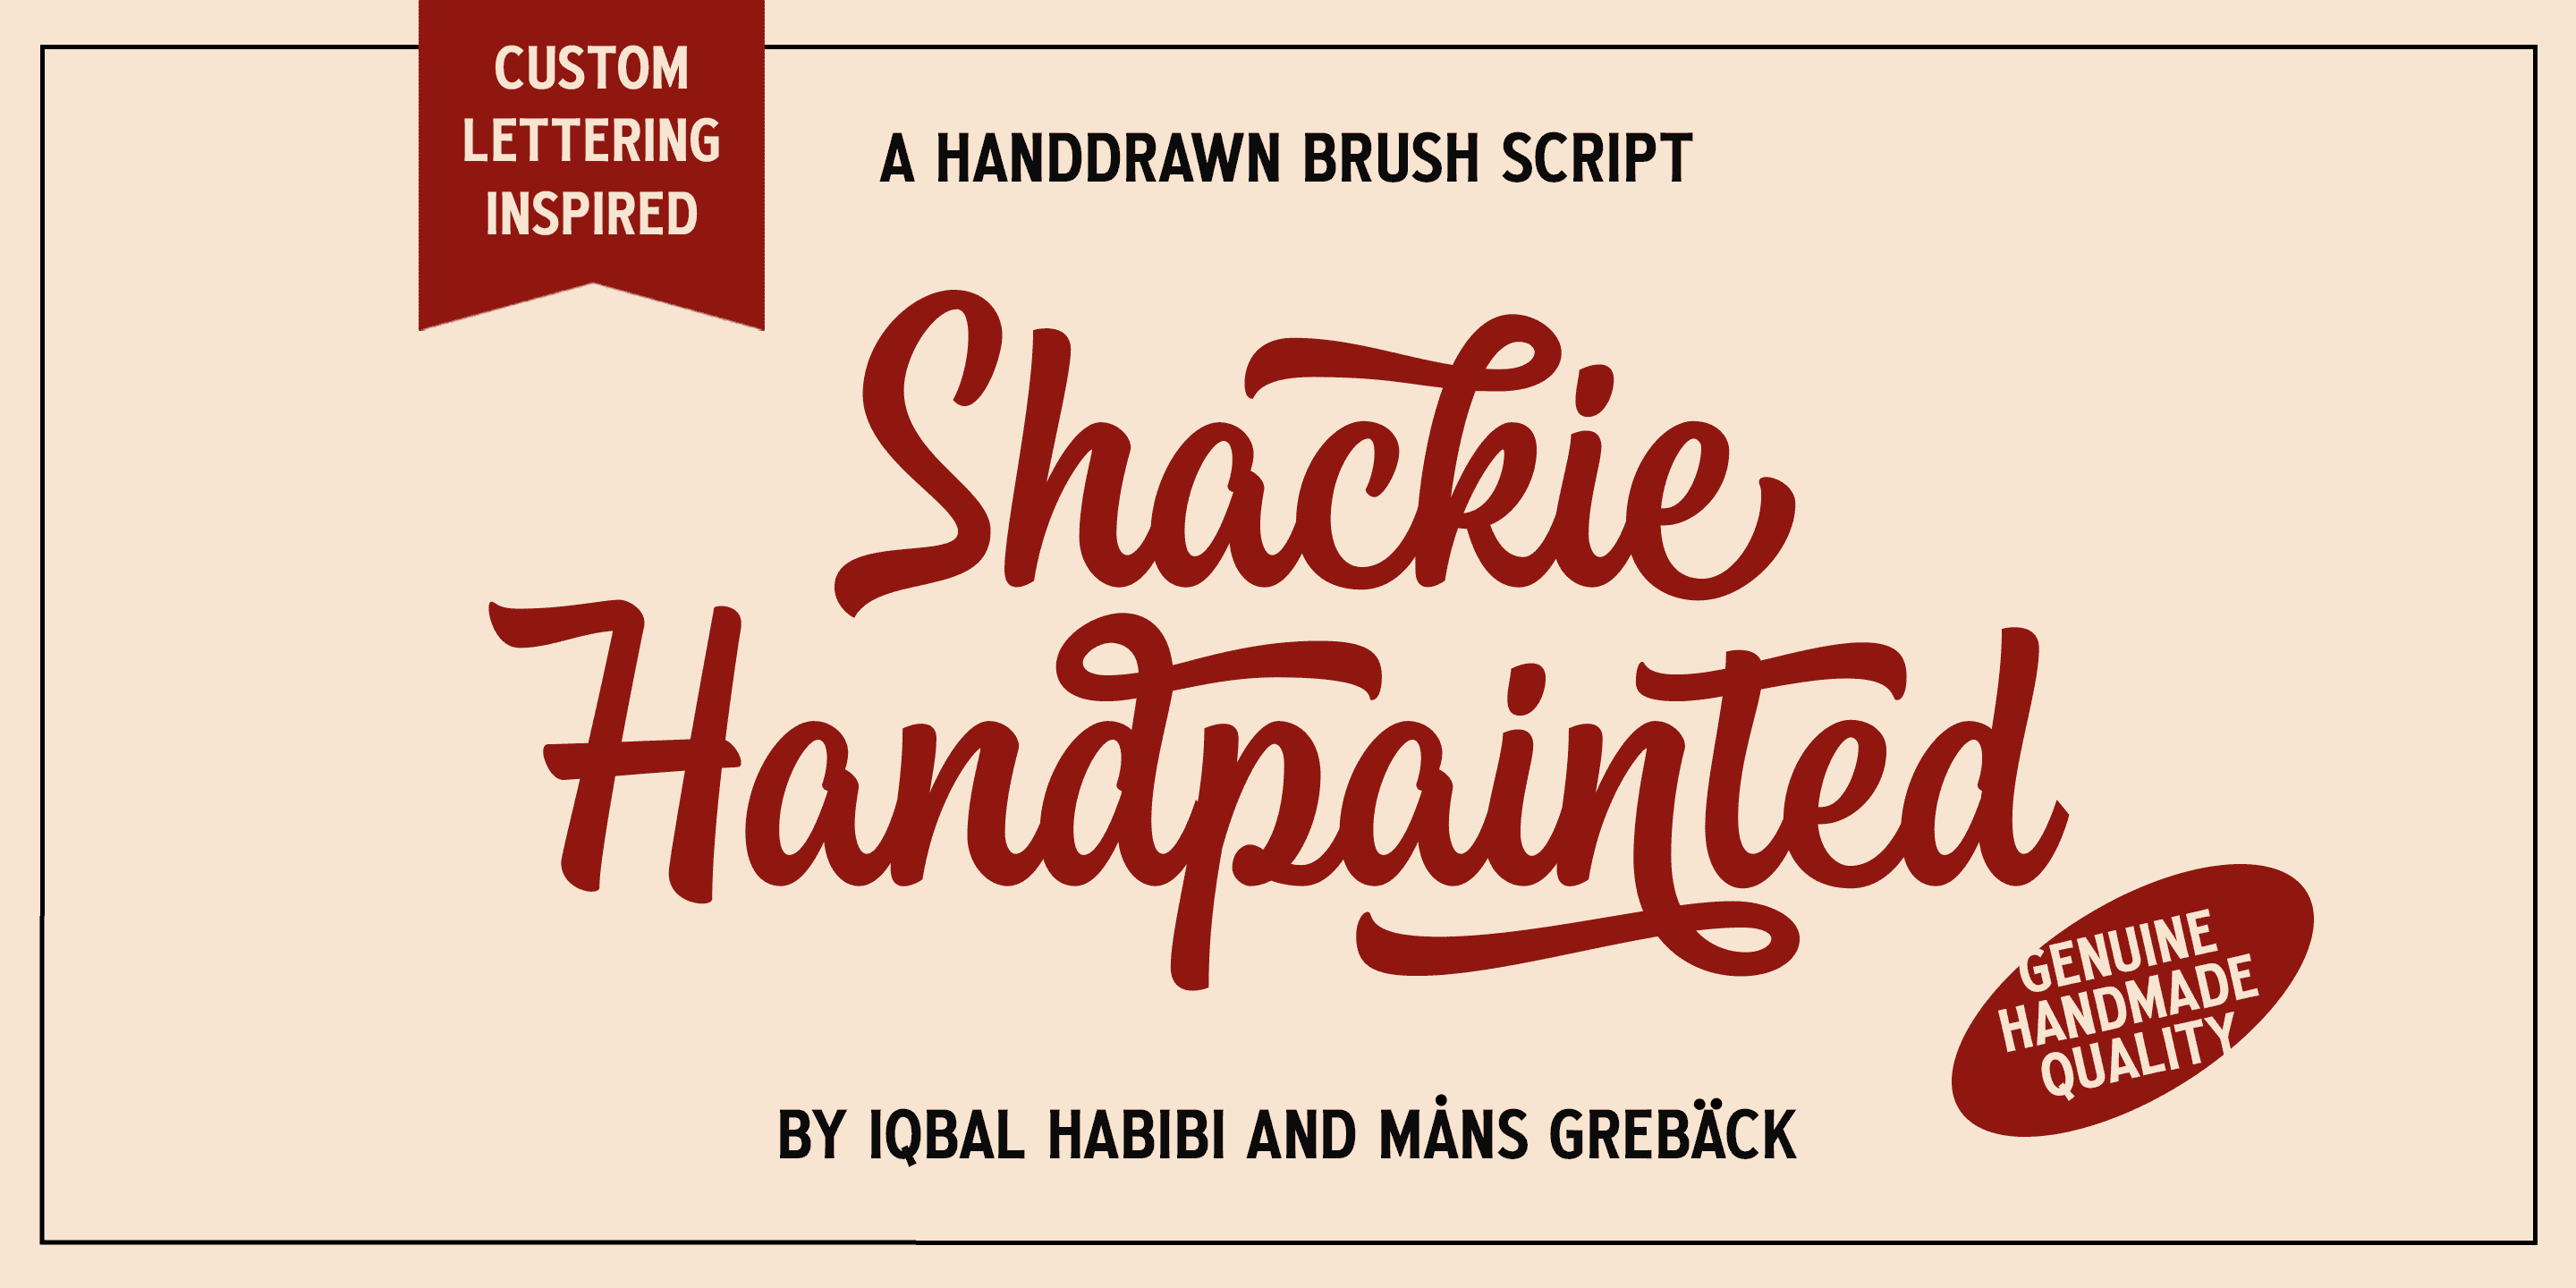 Shackie Handpainted PERSONAL